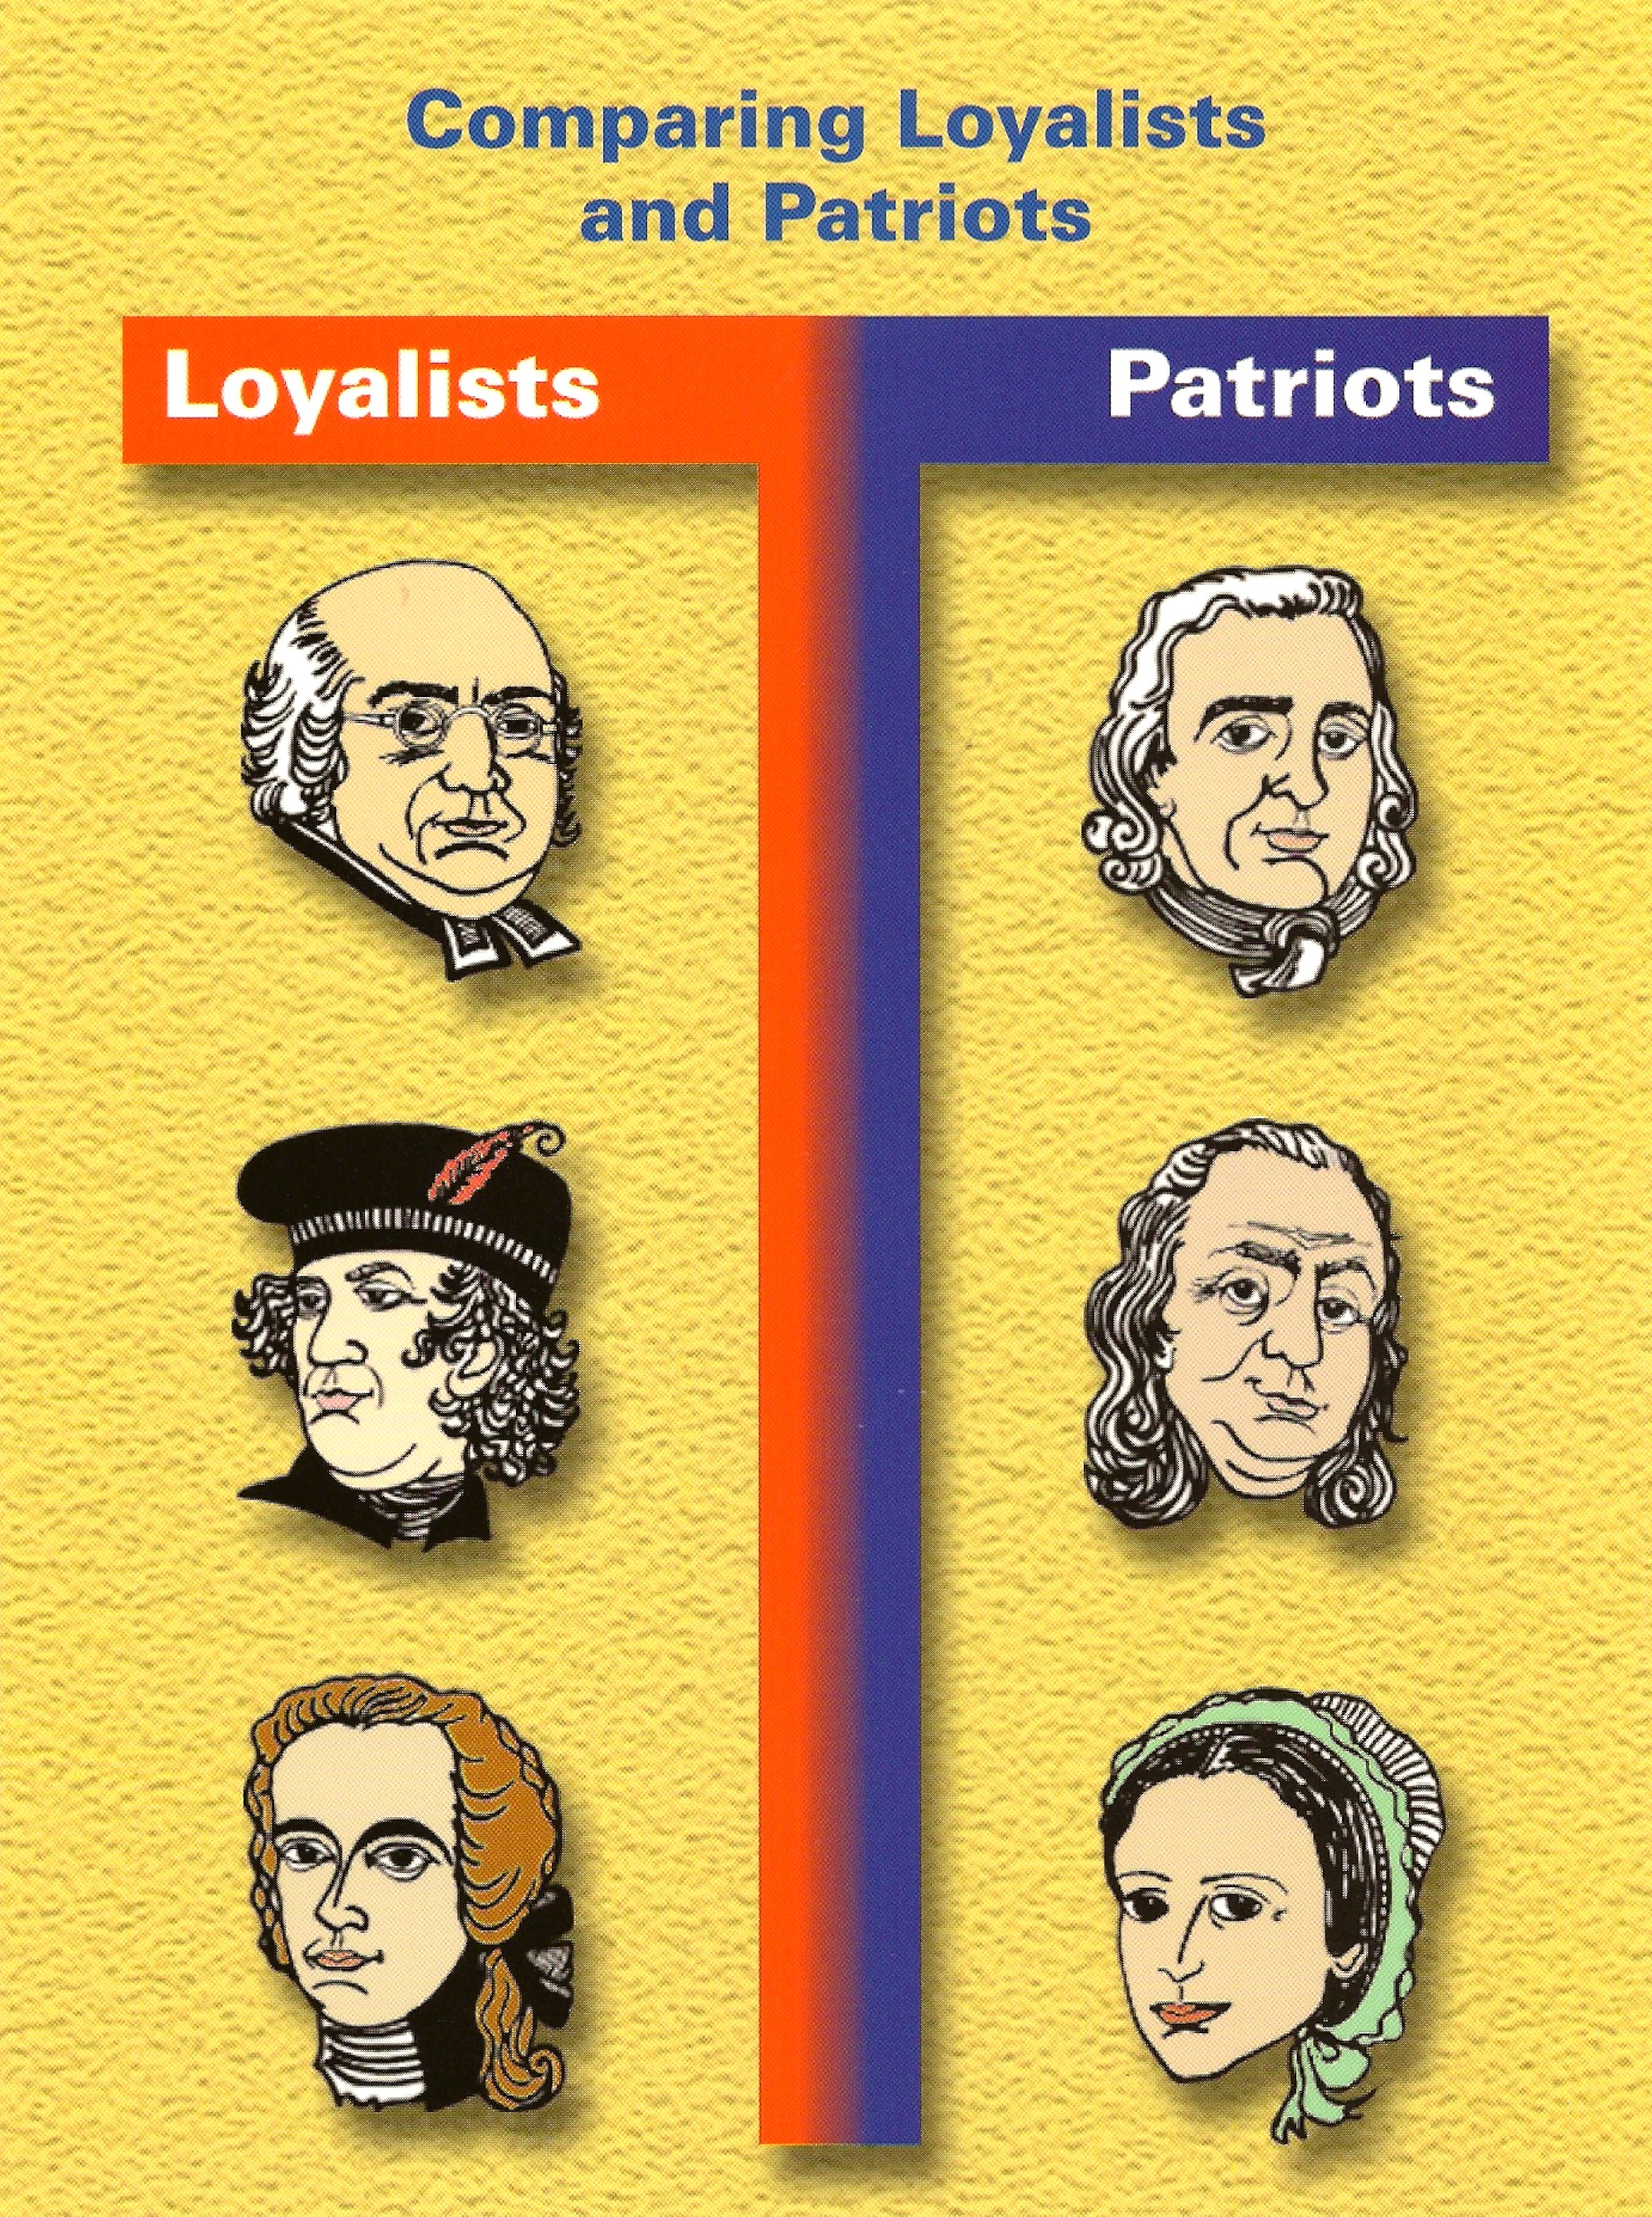 patriots versus loyalists